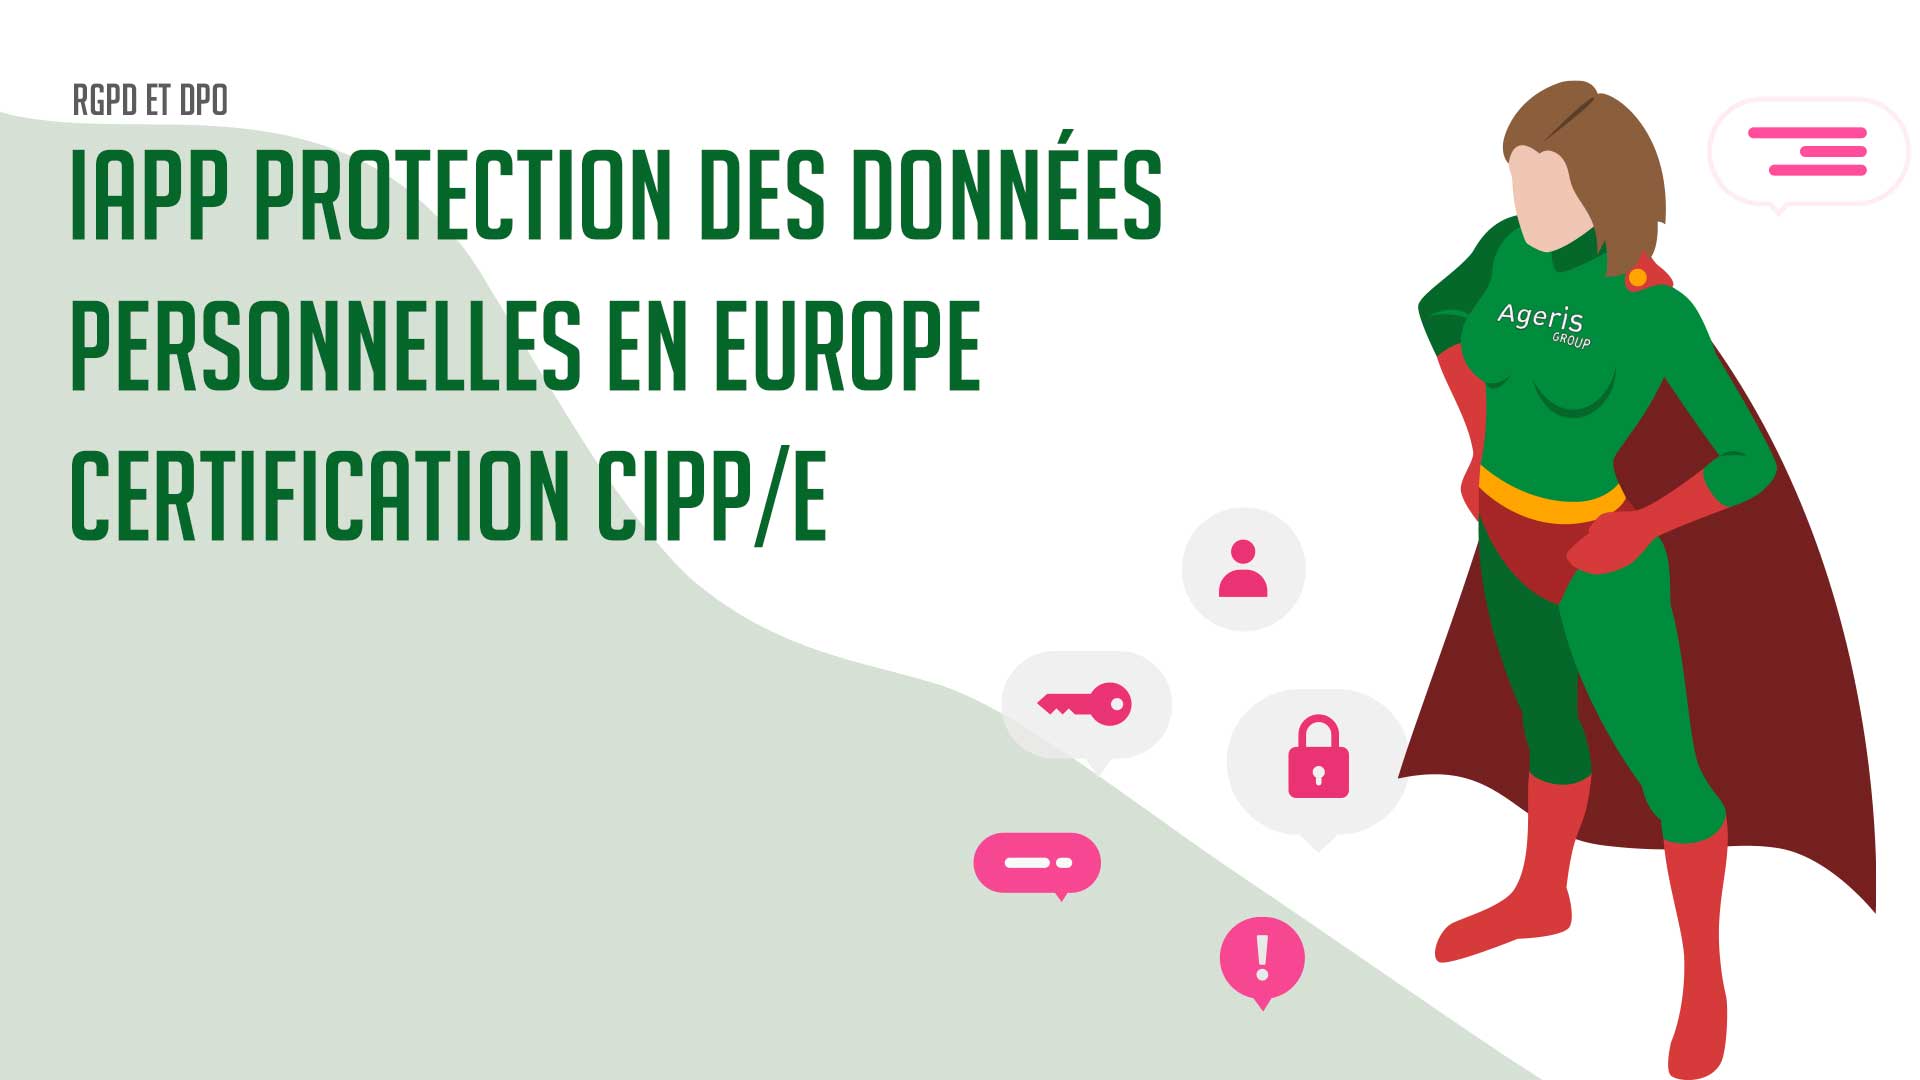 Protection des données personnelles en Europe - Certification CIPP/E IAPP